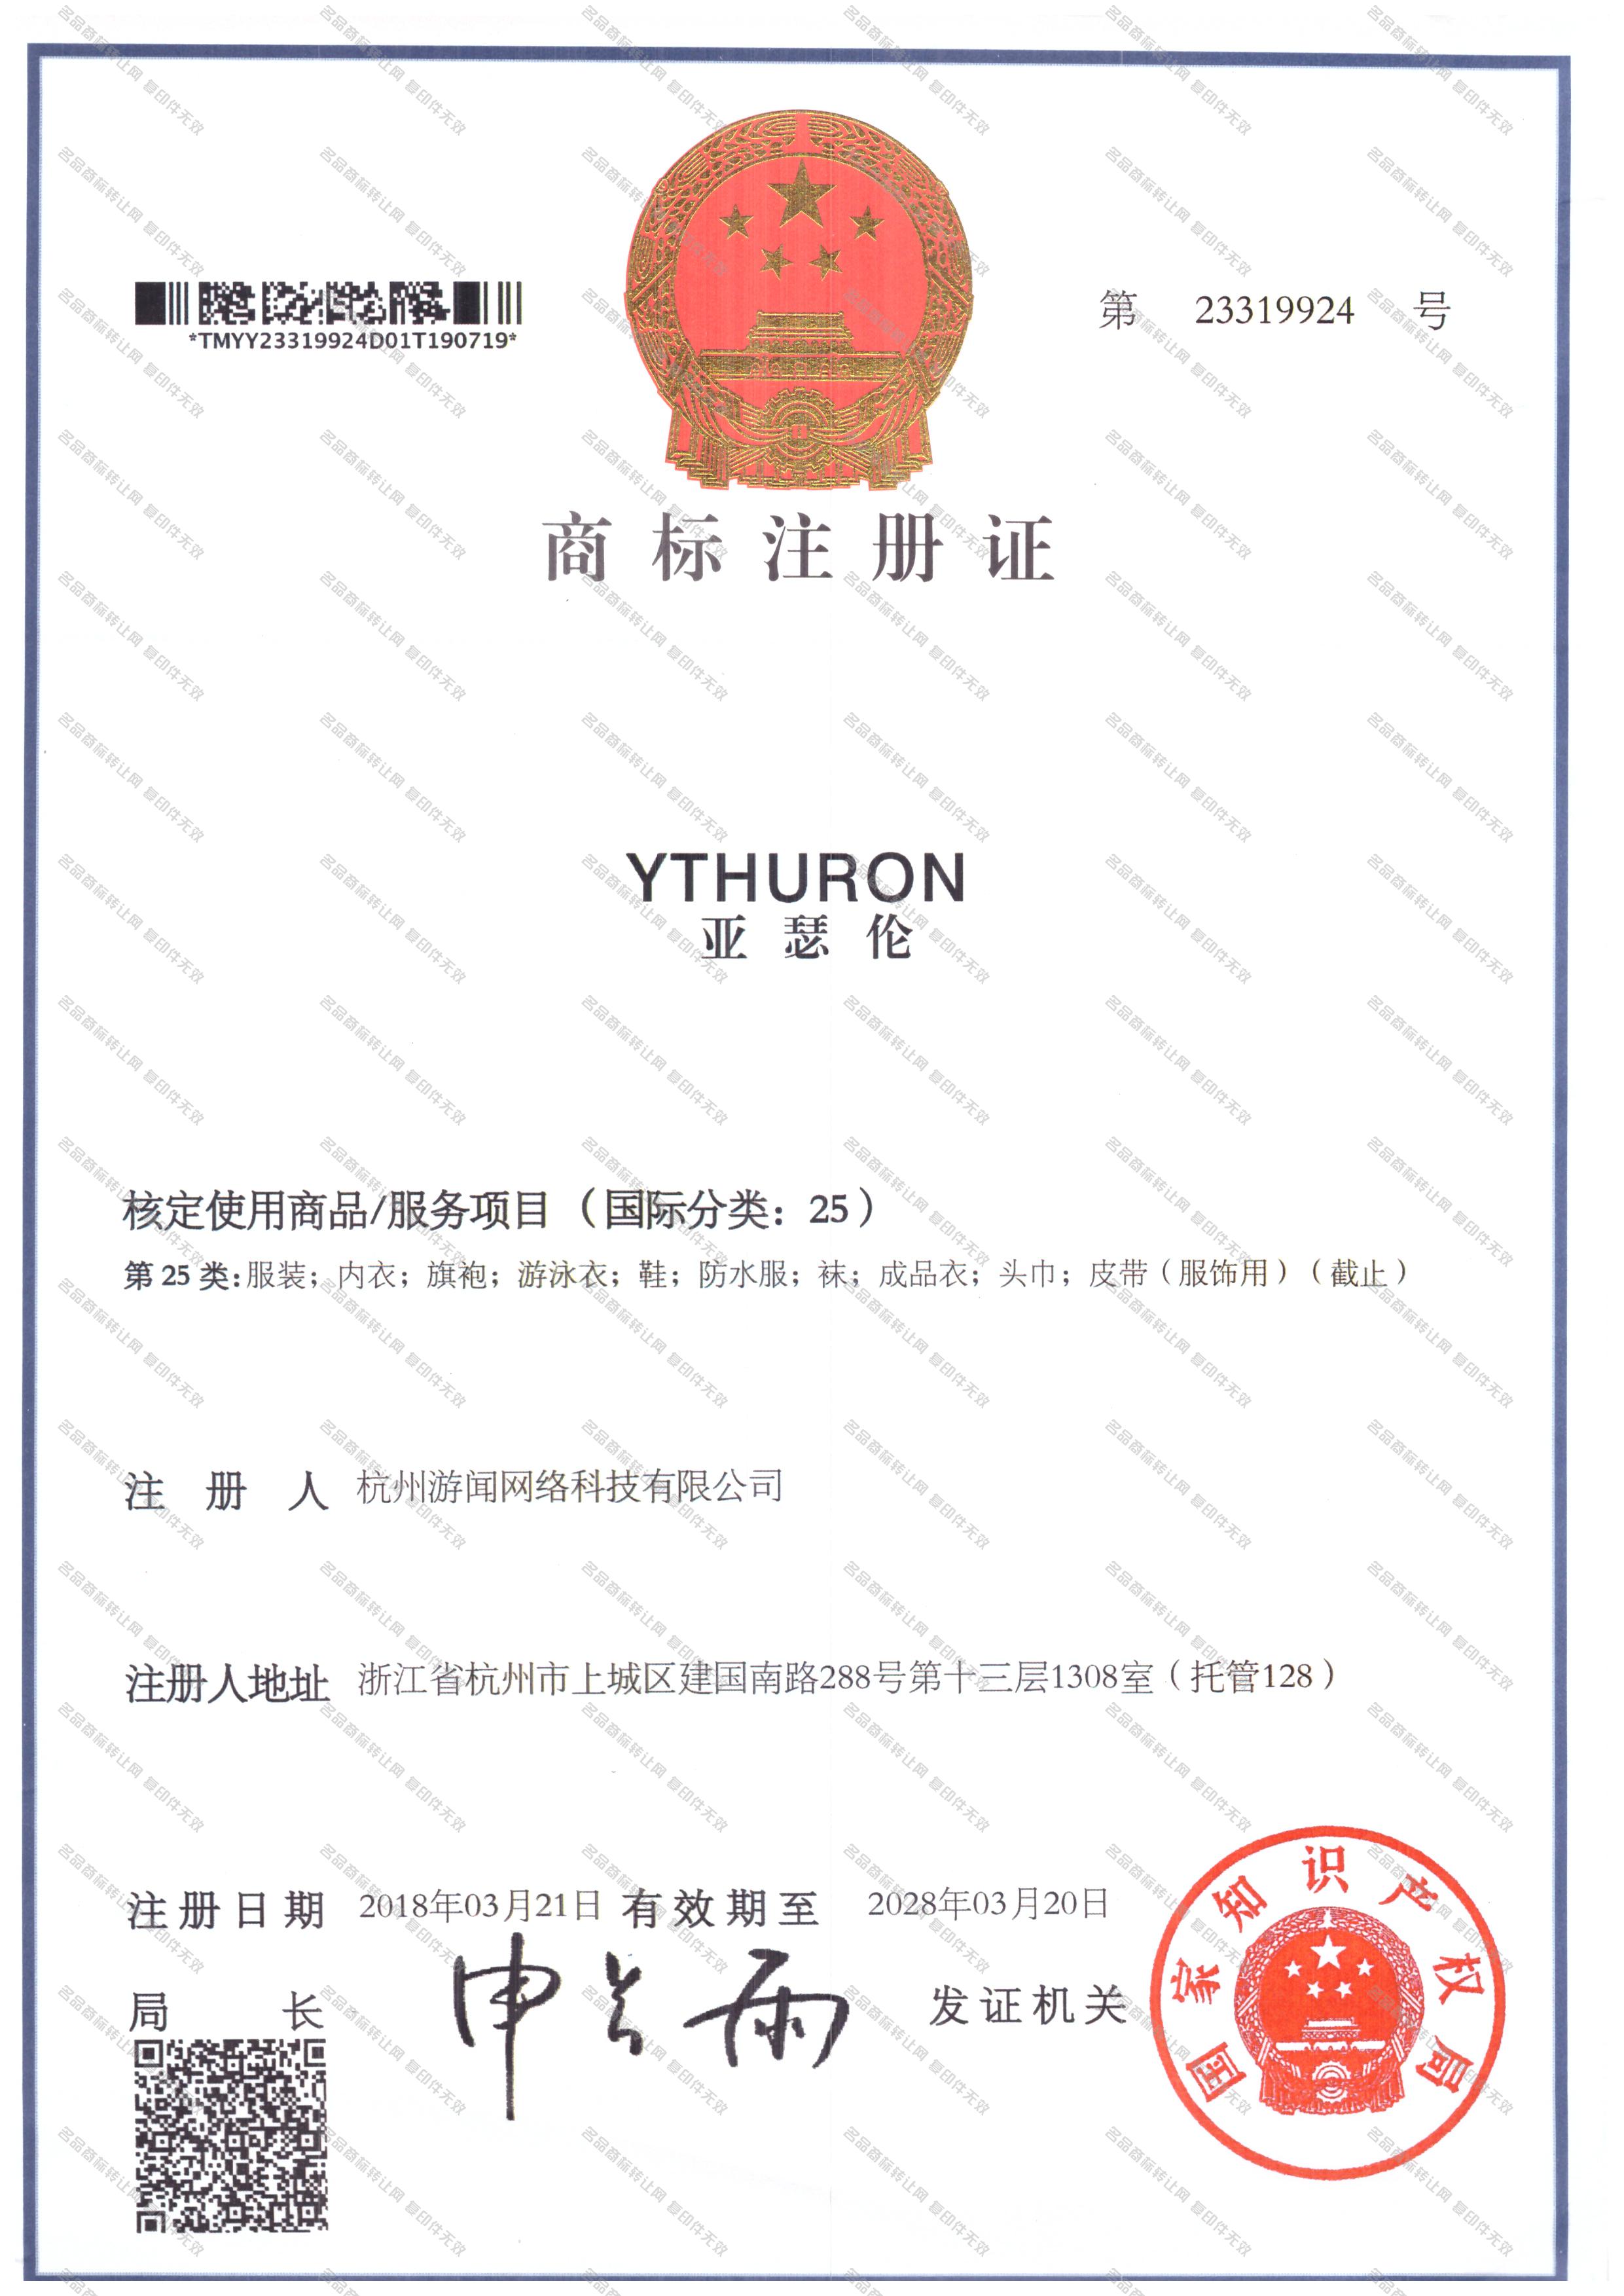 亚瑟伦 YTHURON注册证